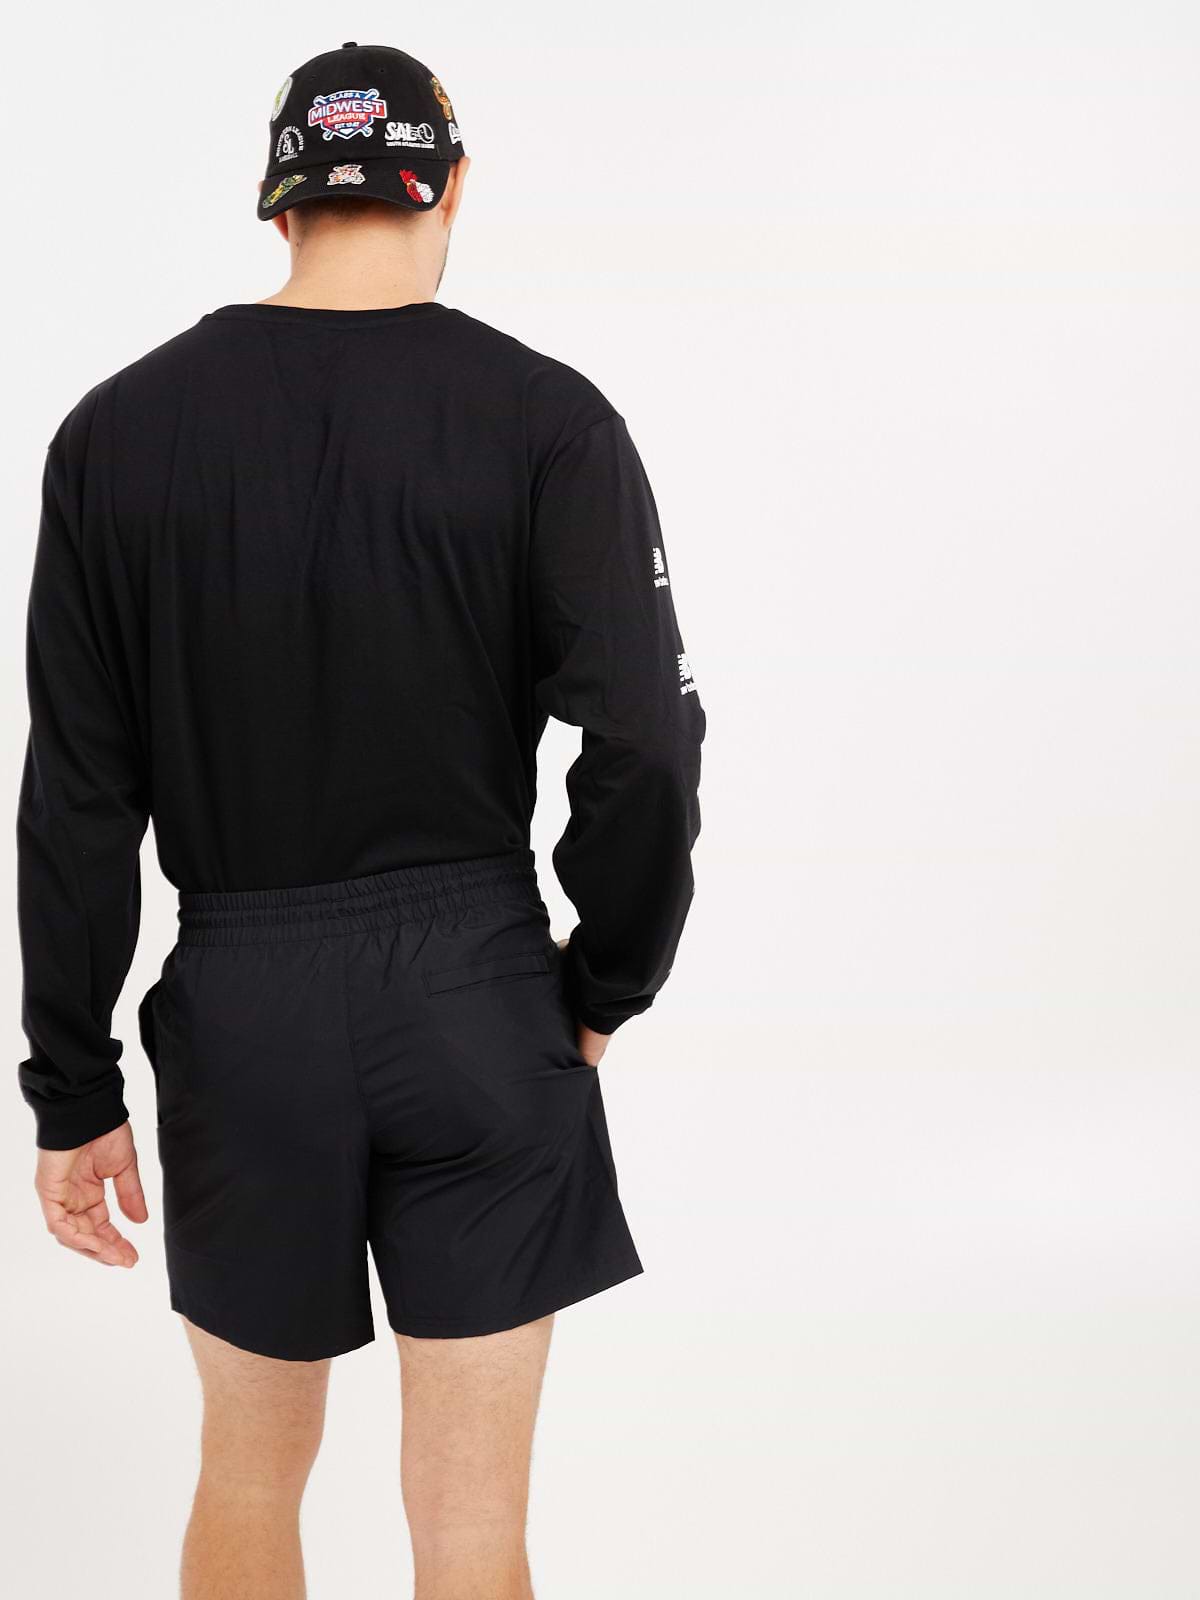 מכנסי ספורט קצרים עם הדפס לוגו- New Balance|ניו בלאנס